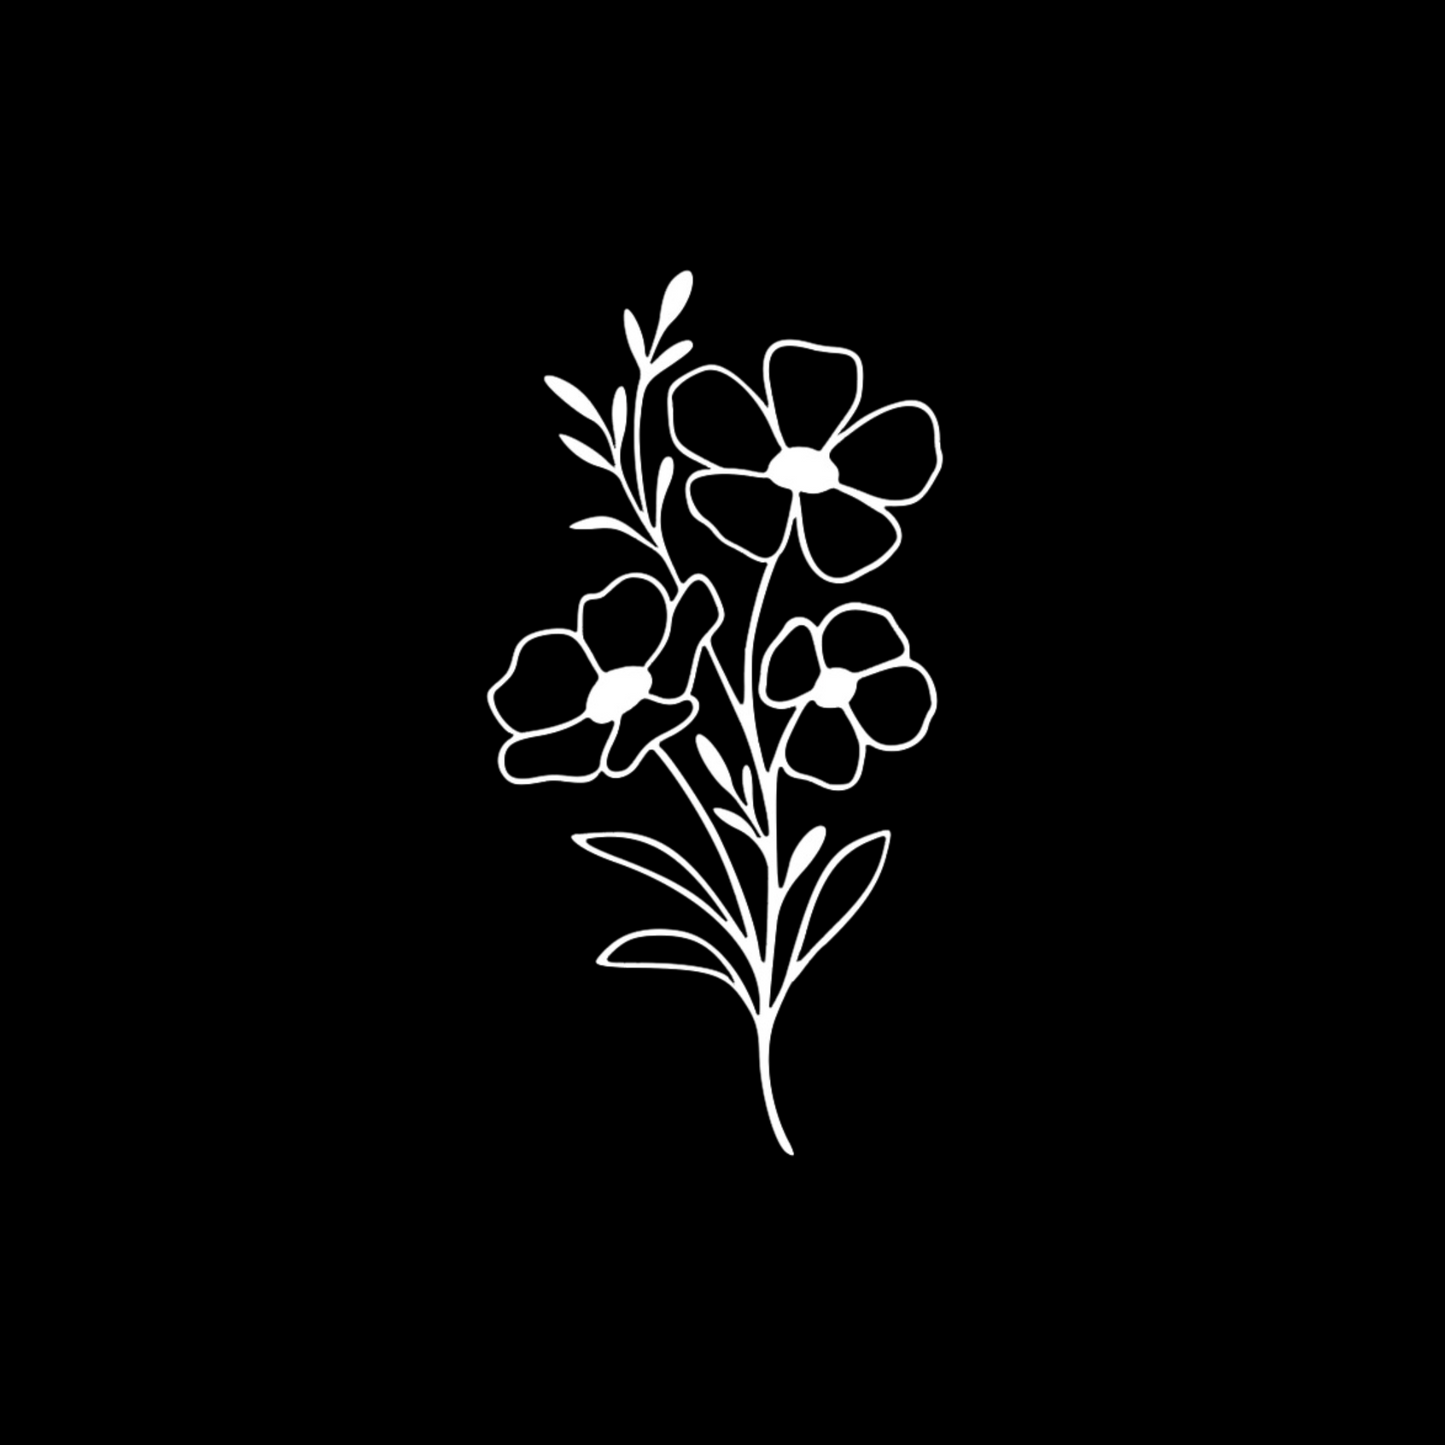 Front flower design - up close on a black background